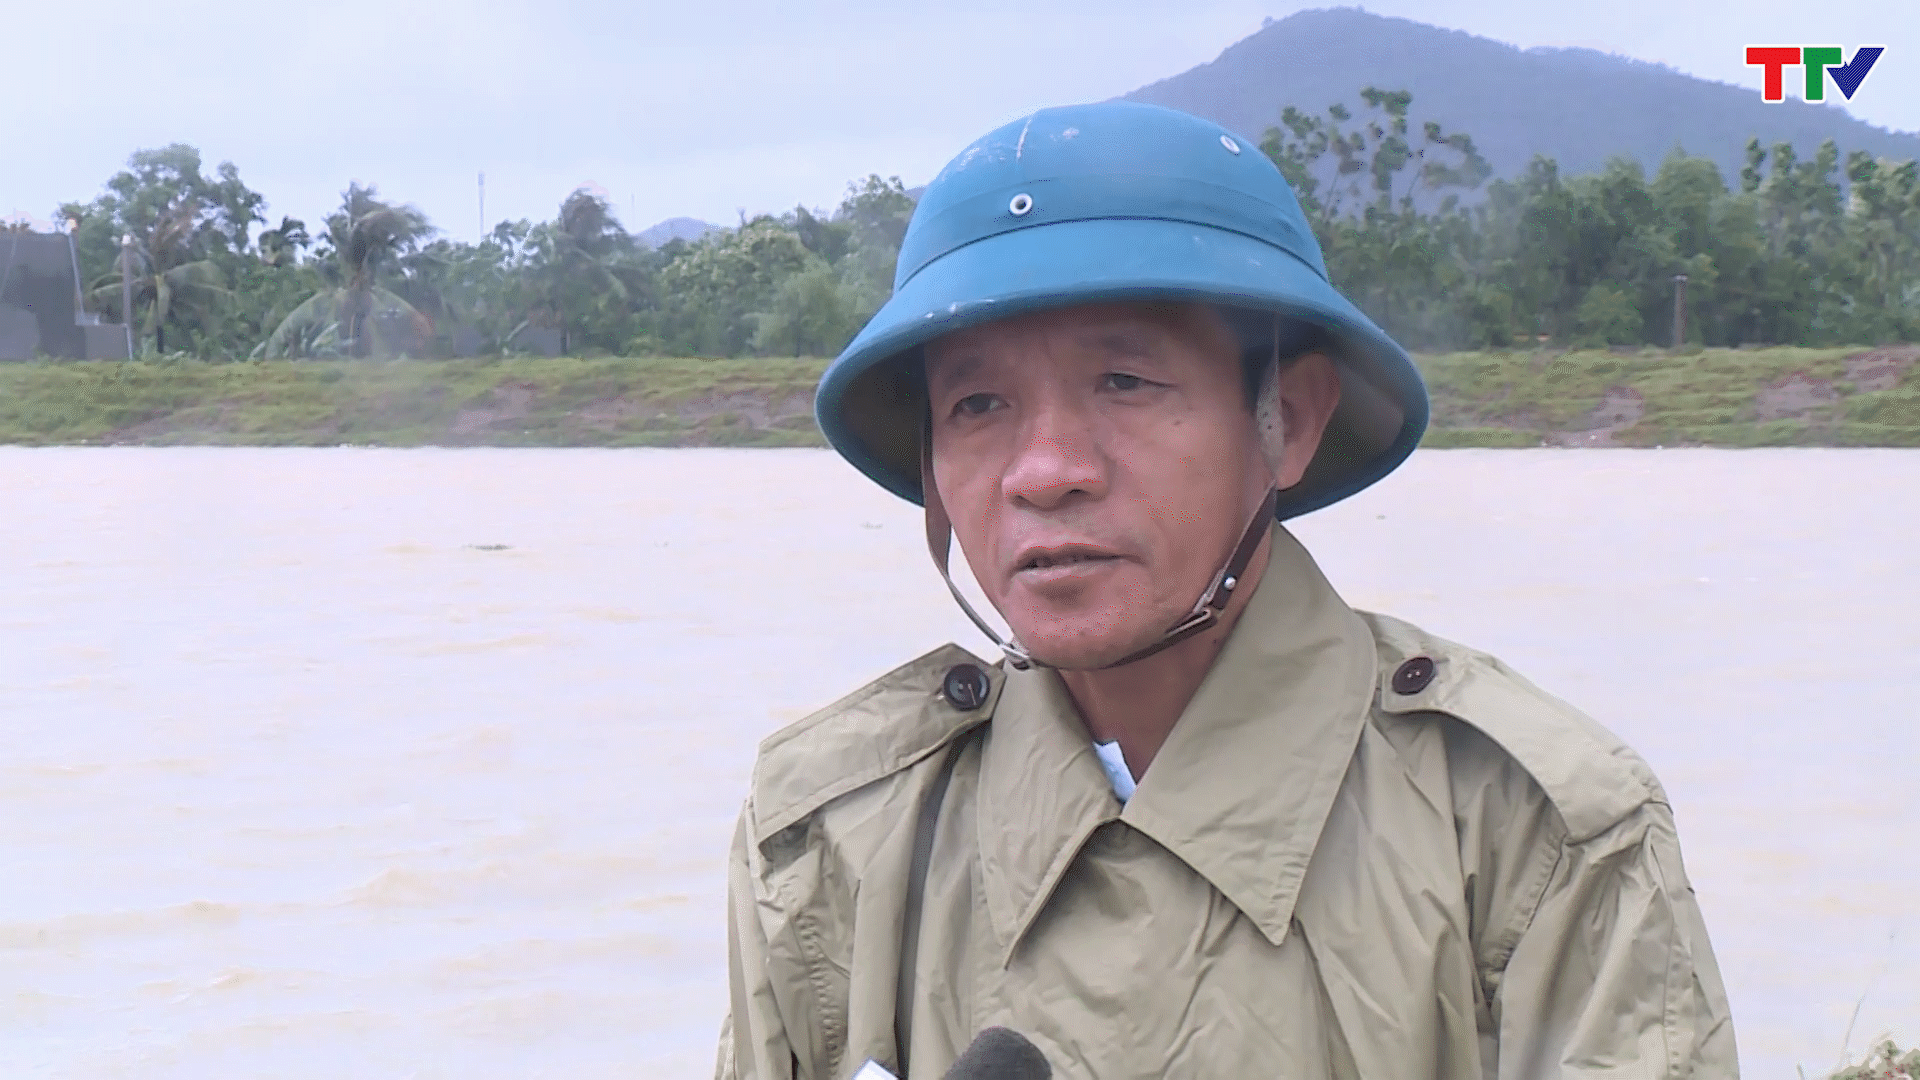 Ông Nguyễn Văn Tuấn - Phó chủ tịch UBND huyện Nông Cống: Chúng tôi đang chỉ đạo các trạm bơm vận hành máy để tiêu úng nước. Đối với diện tích lúa mất trắng chúng tôi đang lên phương án chuyển đổi cây trồng phù hợp.